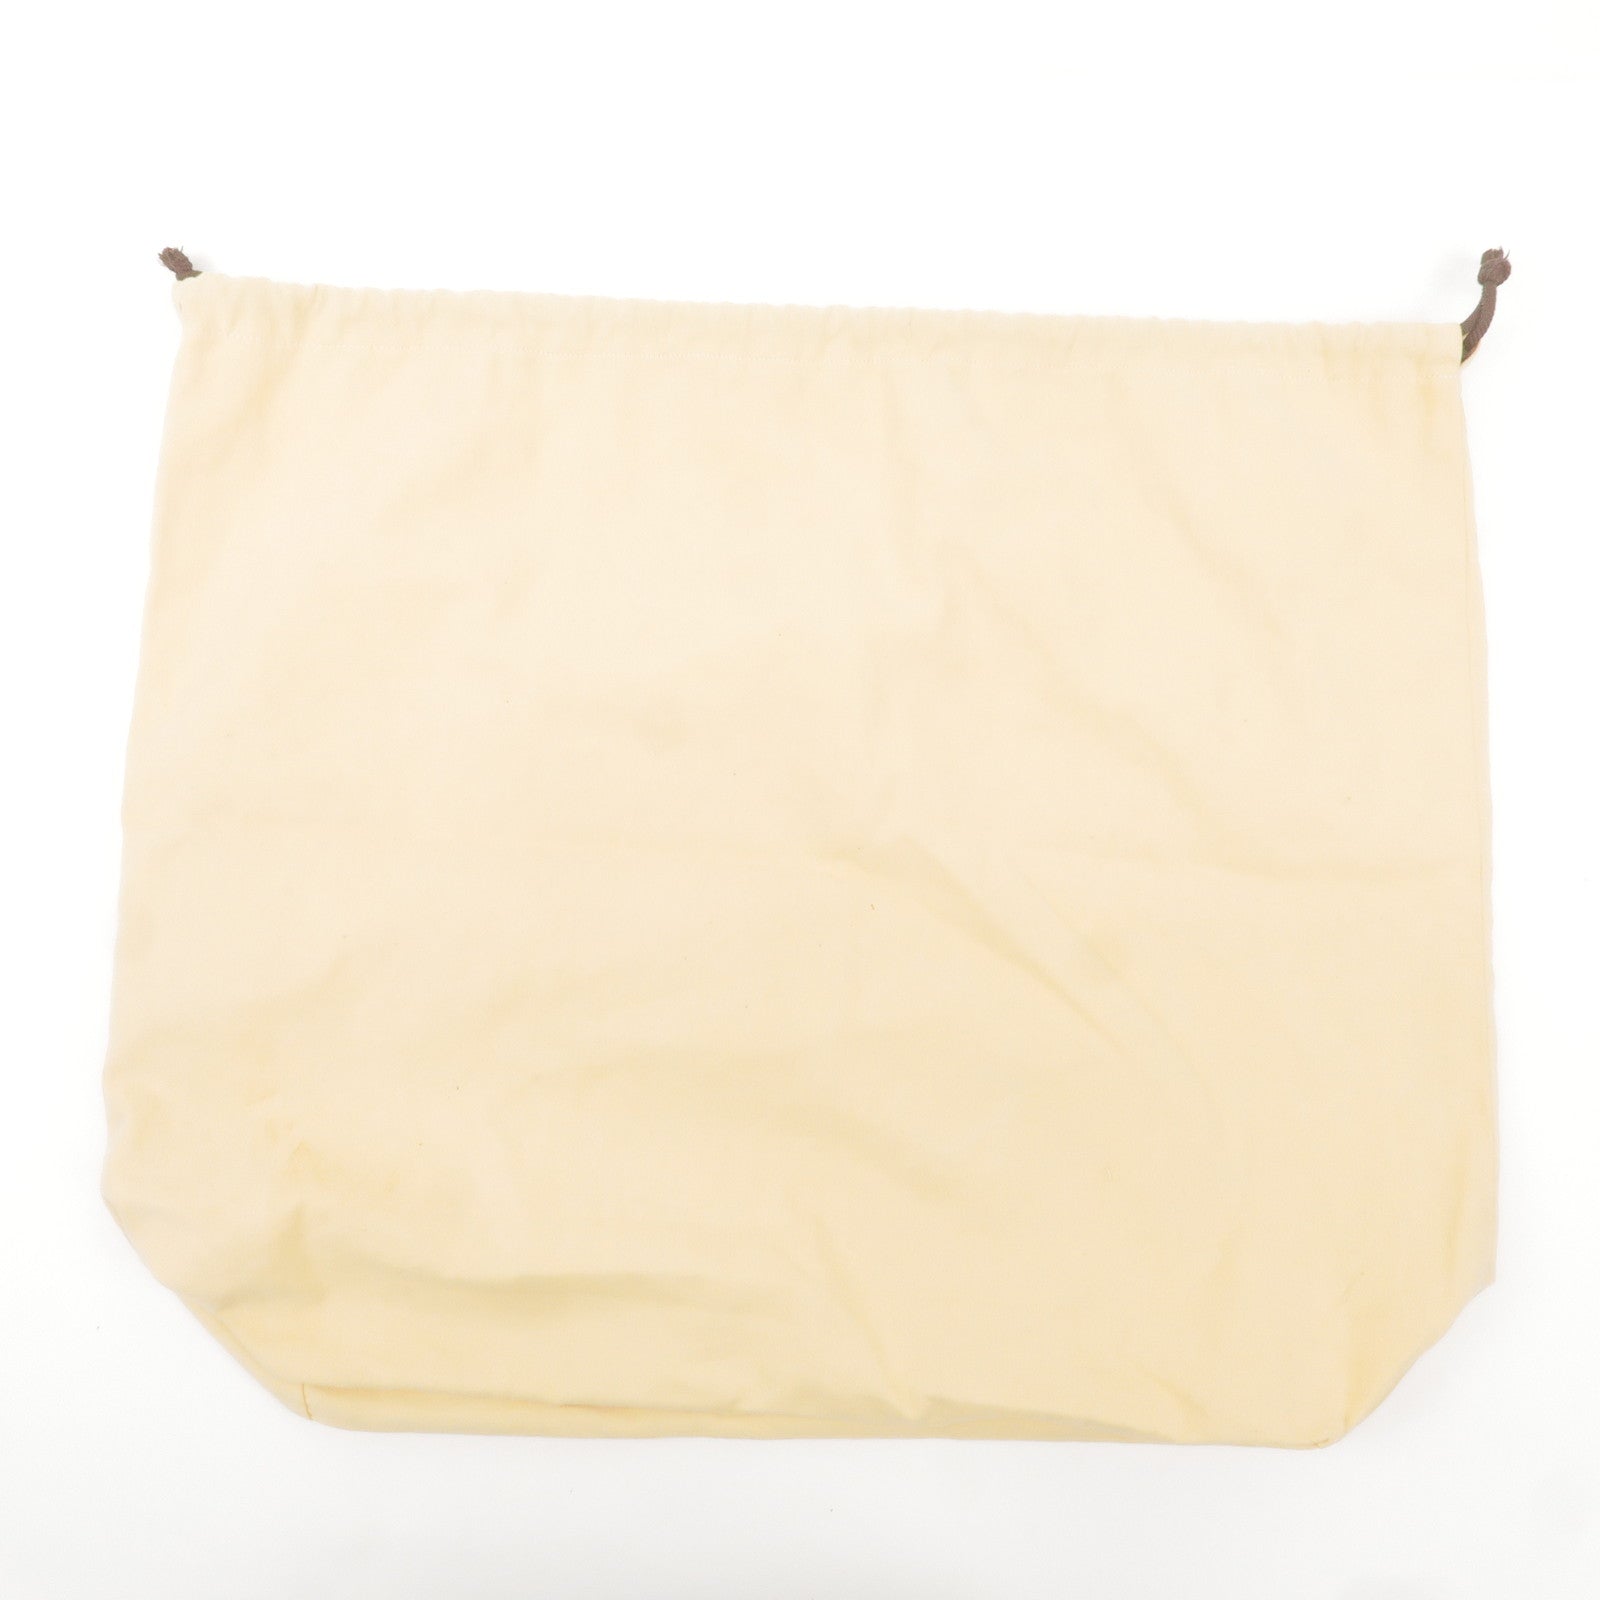 Louis-Vuitton-Set-of-10-Dust-Bag-Storage-Bag-Beige – dct